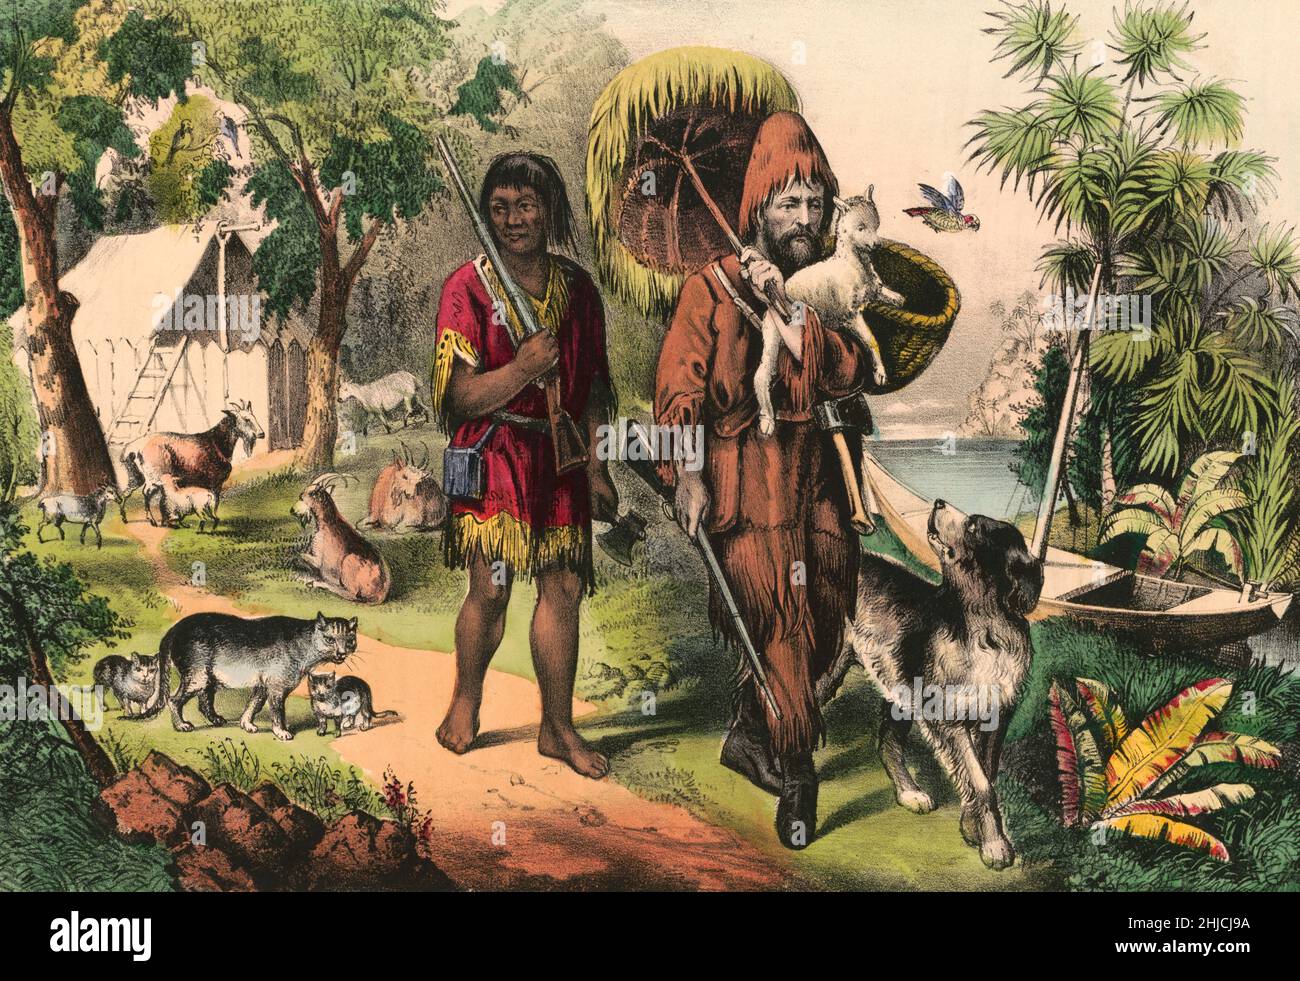 Robison Crusoe et son homme vendredi.Lithographie de couleur main, Currier & Ives, 1874. Banque D'Images